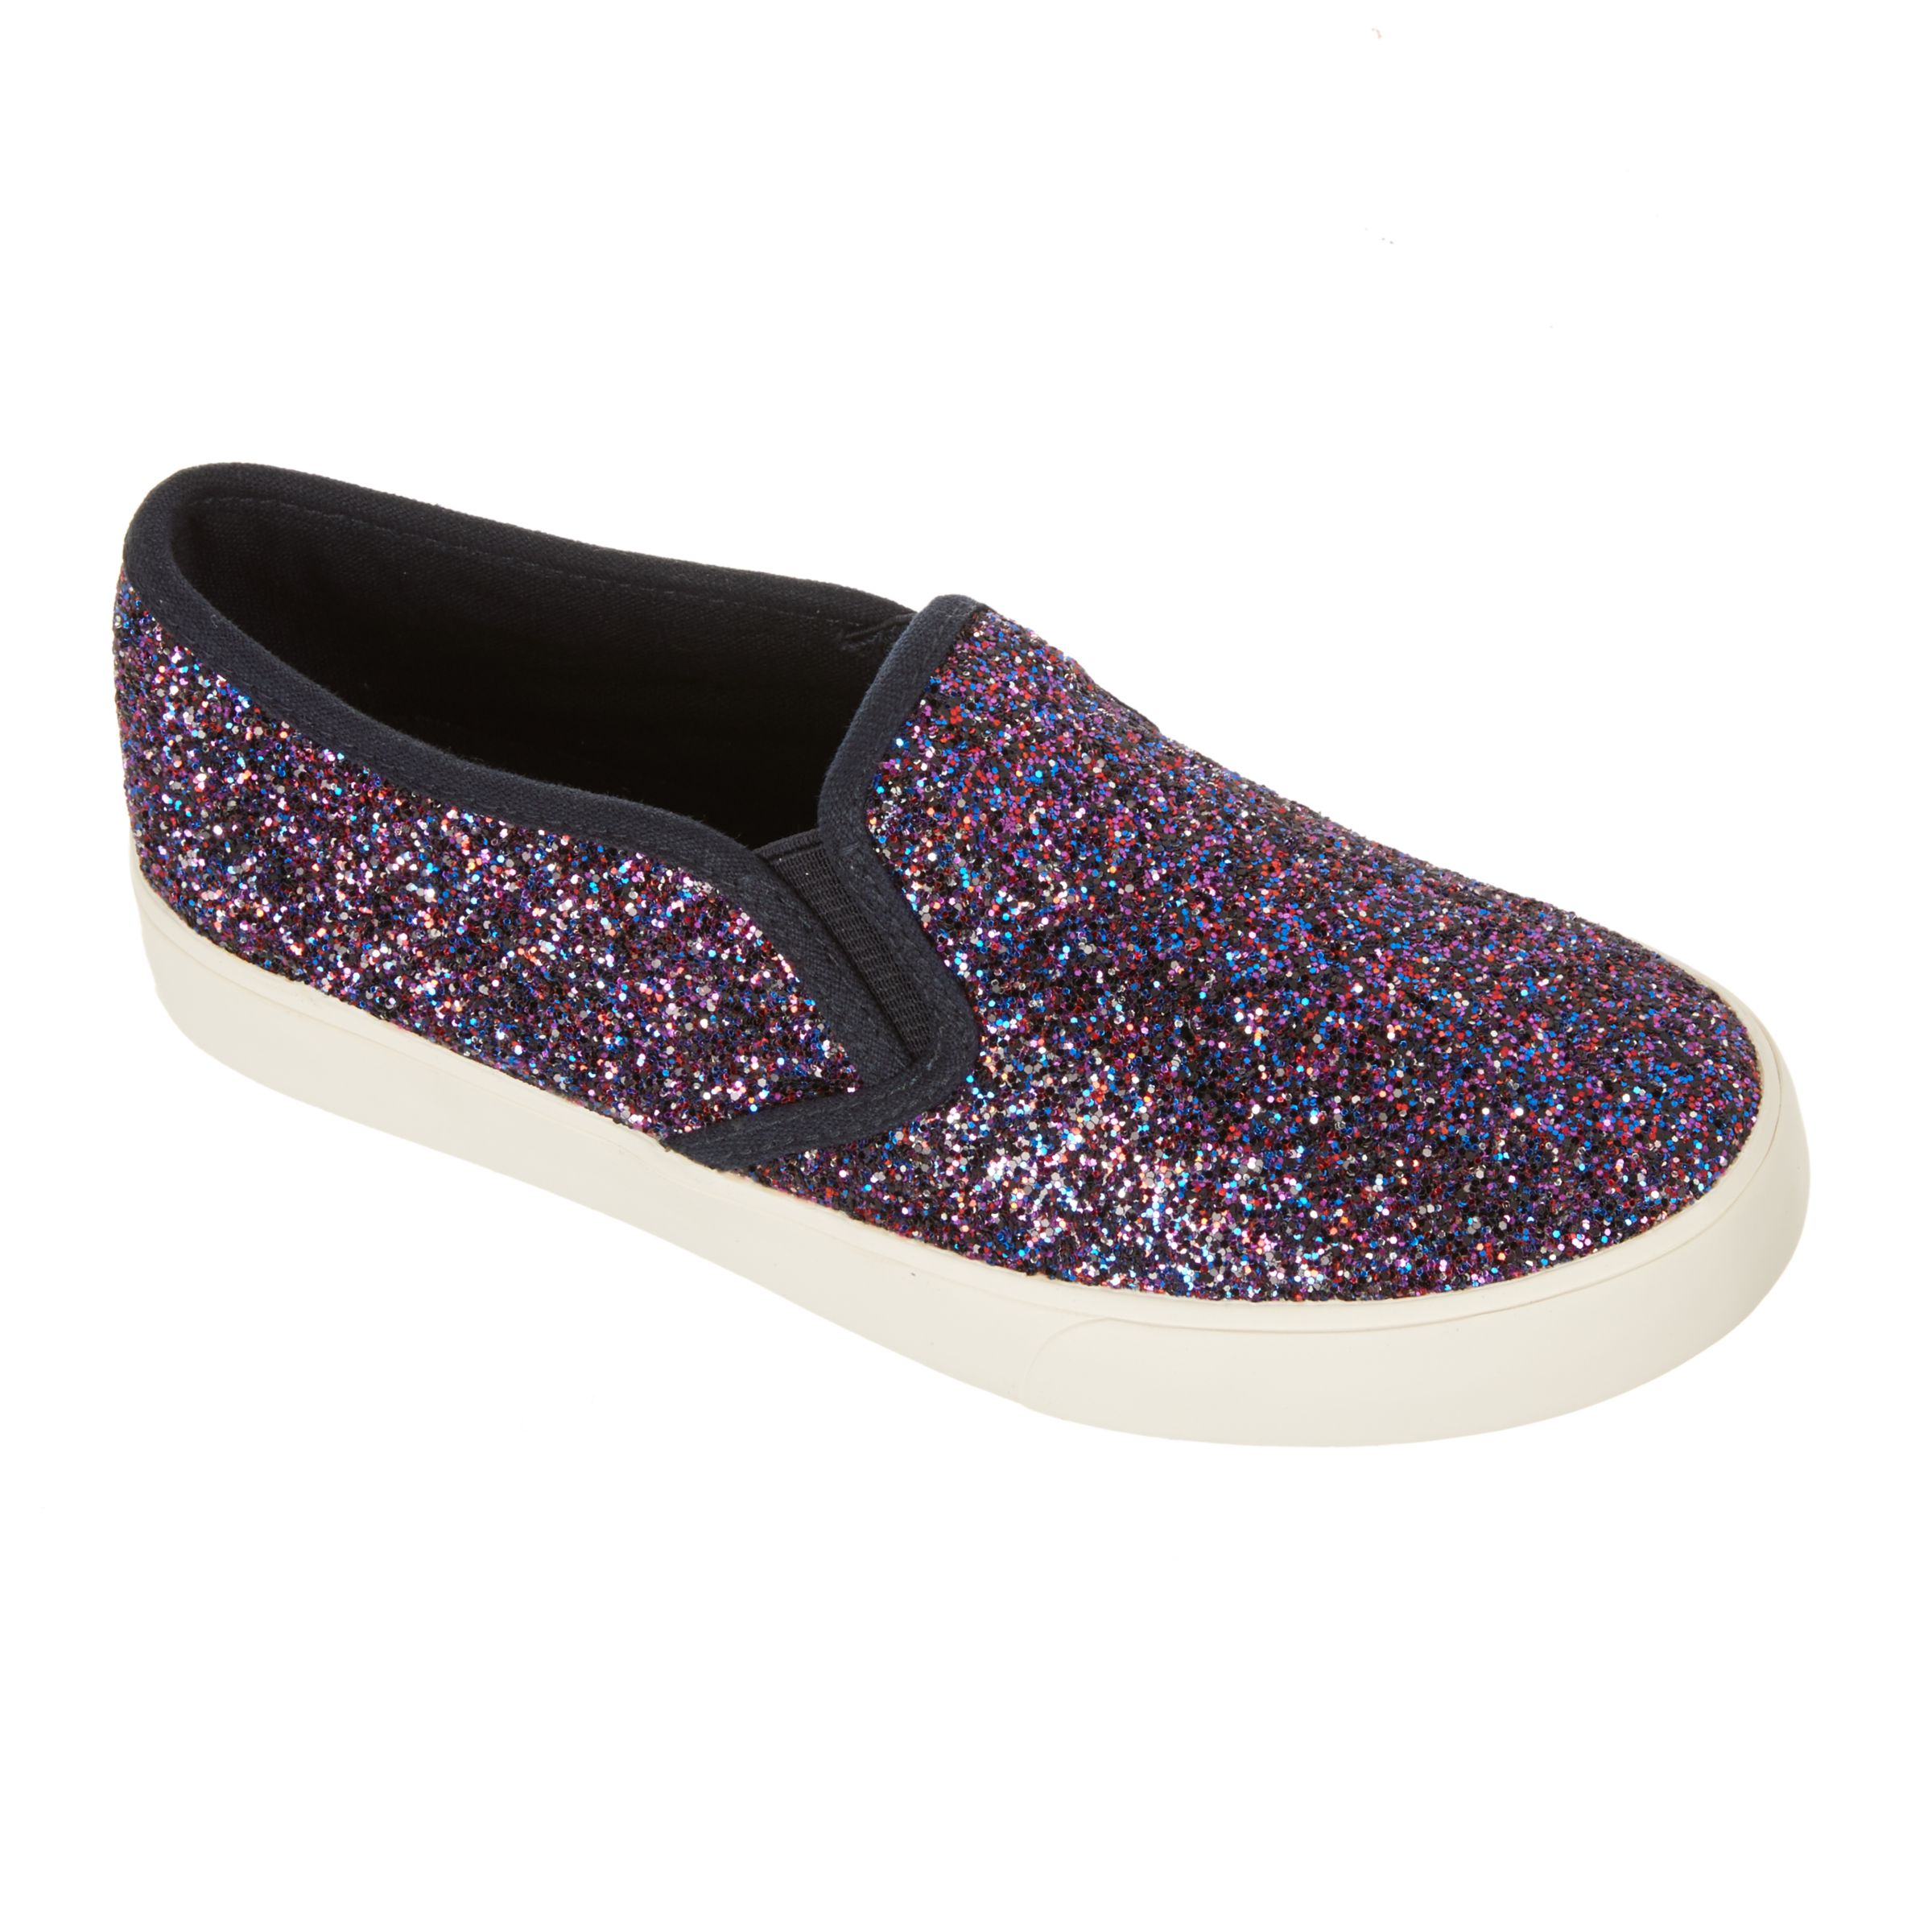 John Lewis & Partners Children's Pheobe Glitter Slip On Shoes, Purple, 4